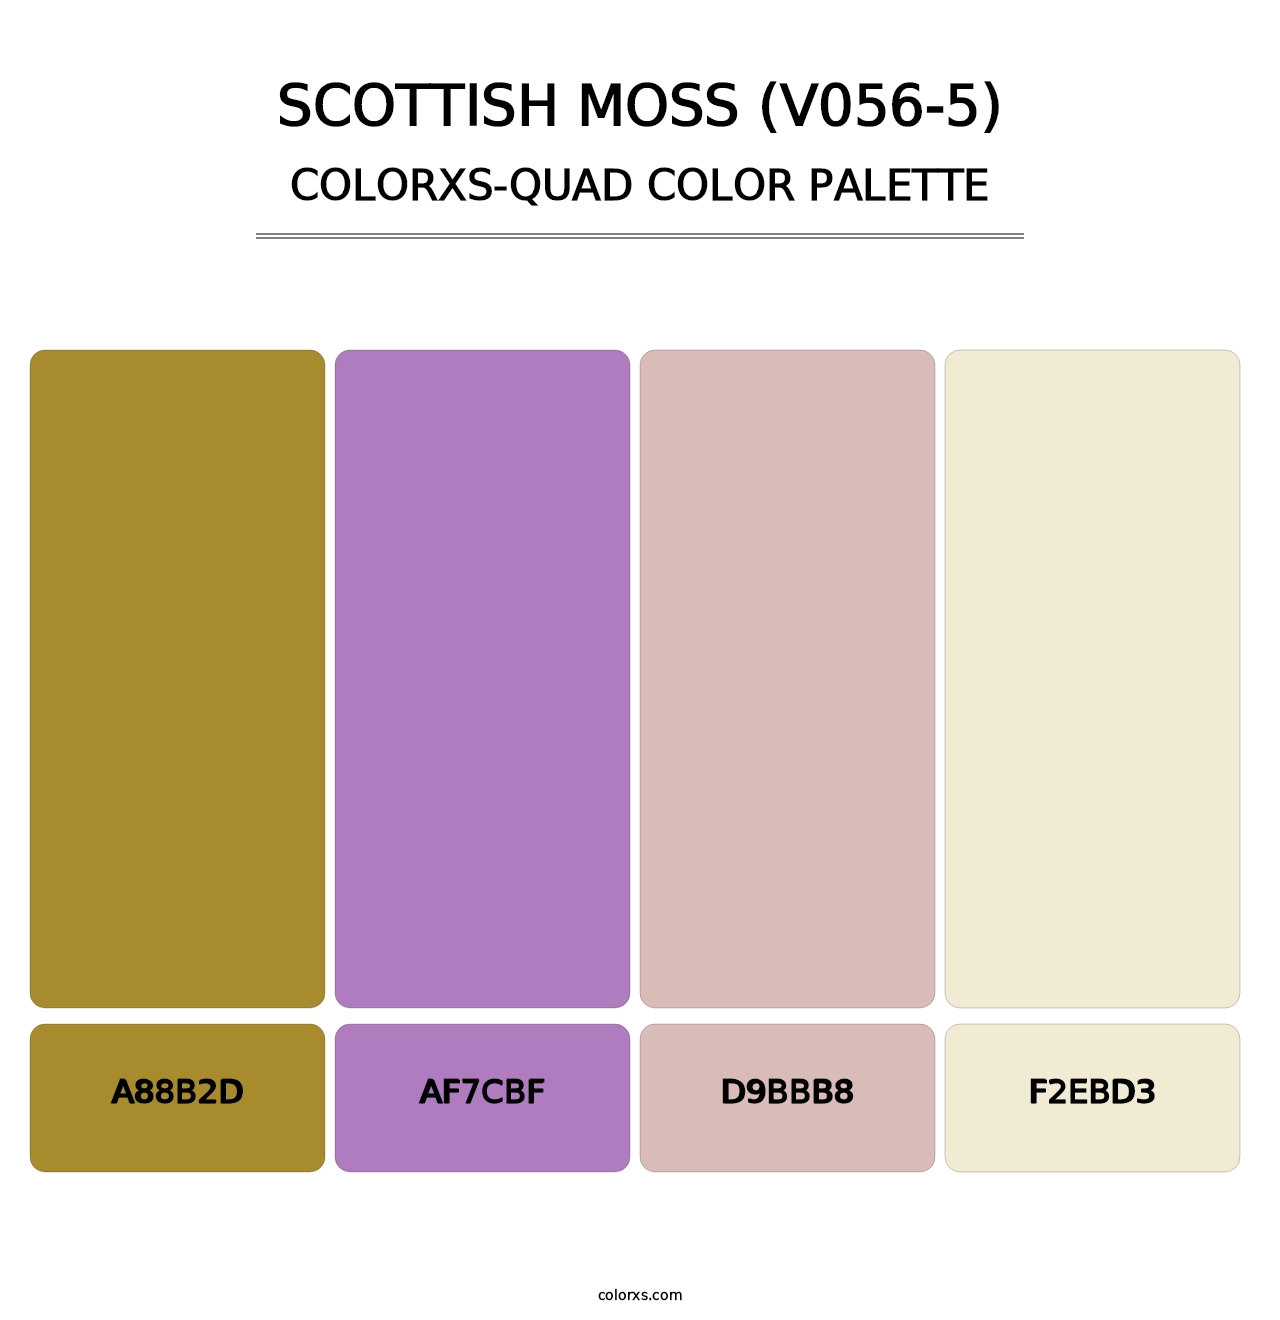 Scottish Moss (V056-5) - Colorxs Quad Palette